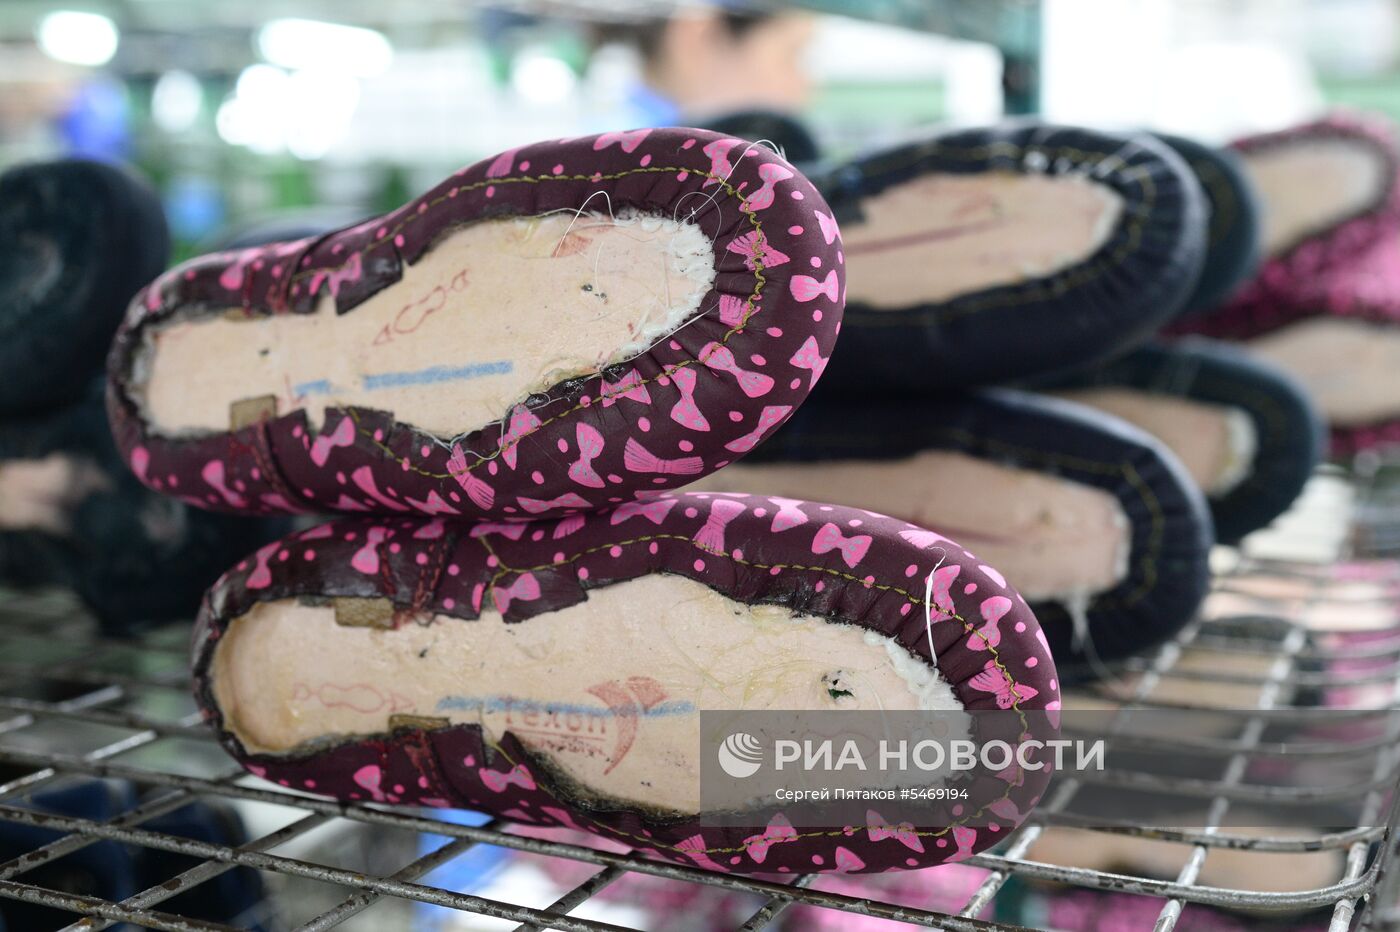 Обувная фабрика "Котофей" в Московской области